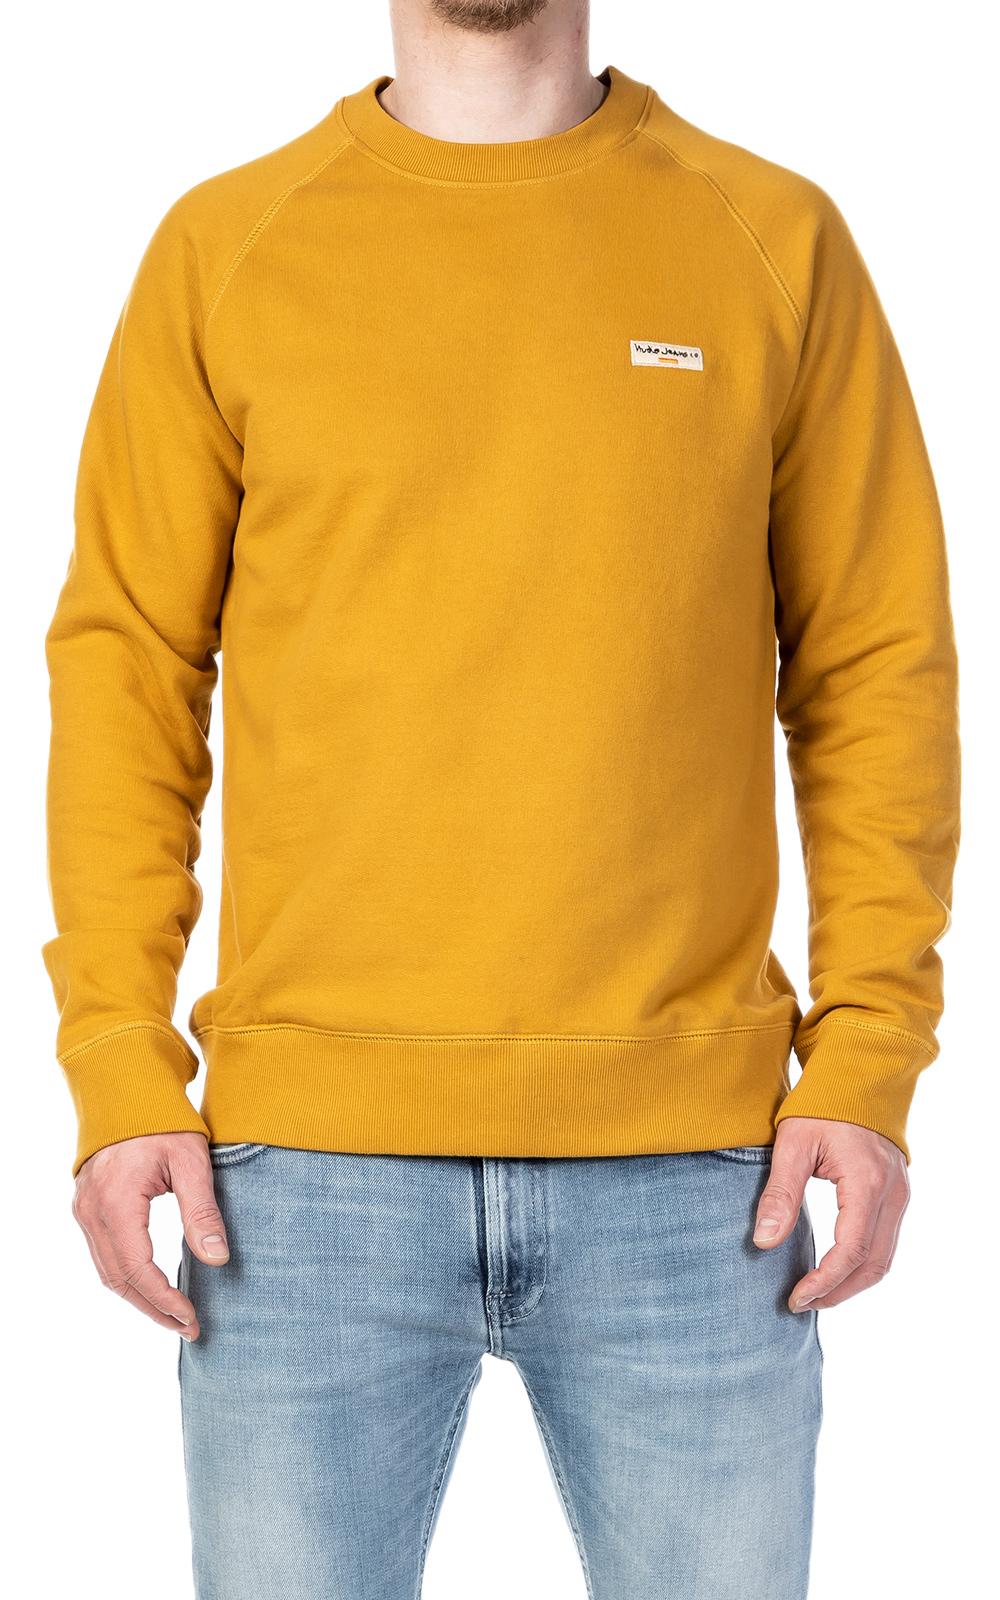 Nudie Jeans Cotton Nudie Jeans Samuel Logo Sweatshirt Turmeric in Yellow  for Men - Lyst